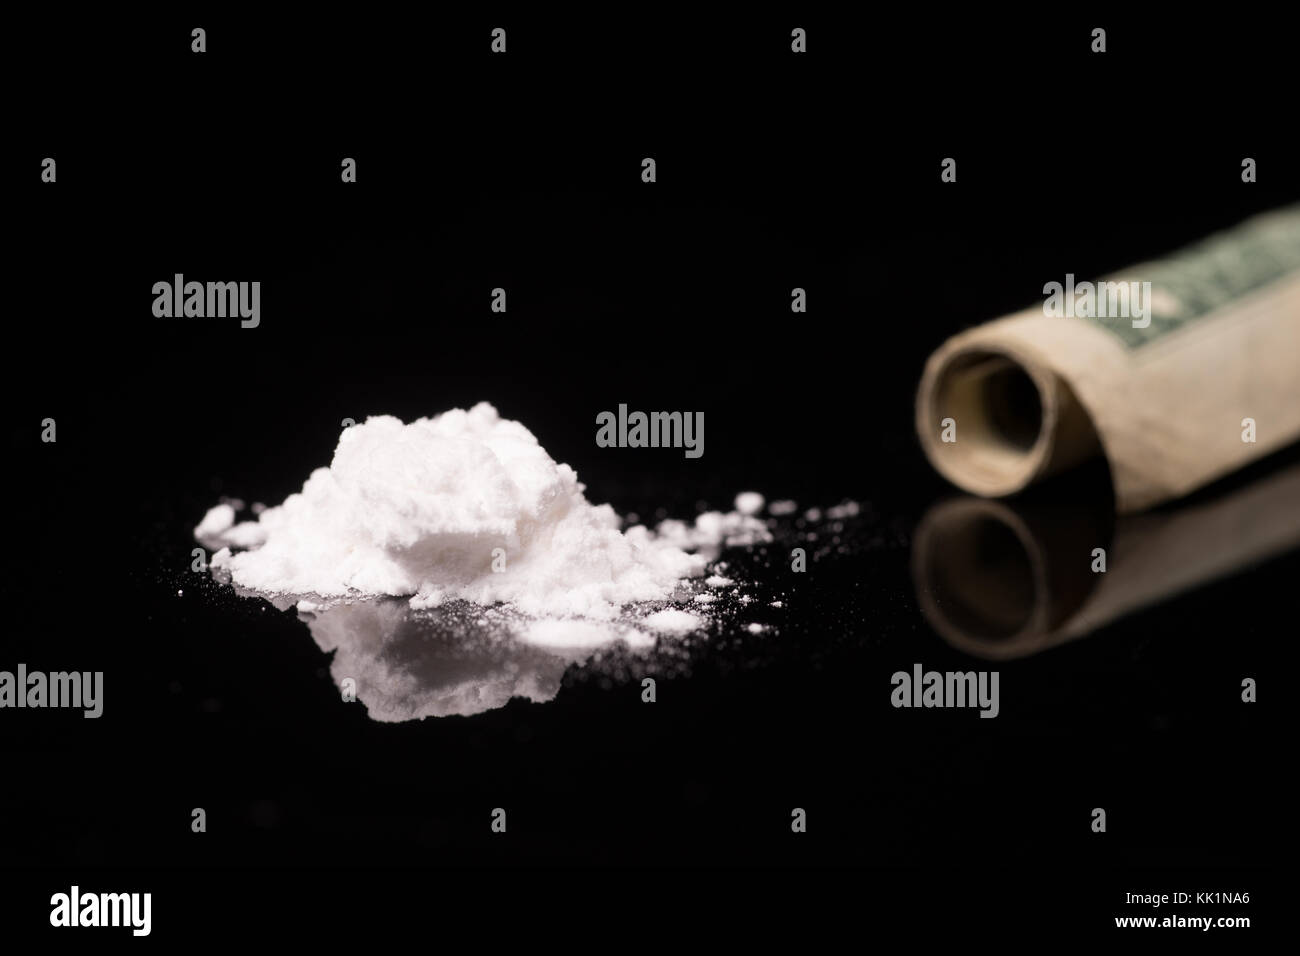 La cocaïne ou d'autres drogues illicites qui sont détectées au moyen d'un tube, isolé sur fond noir brillant Banque D'Images